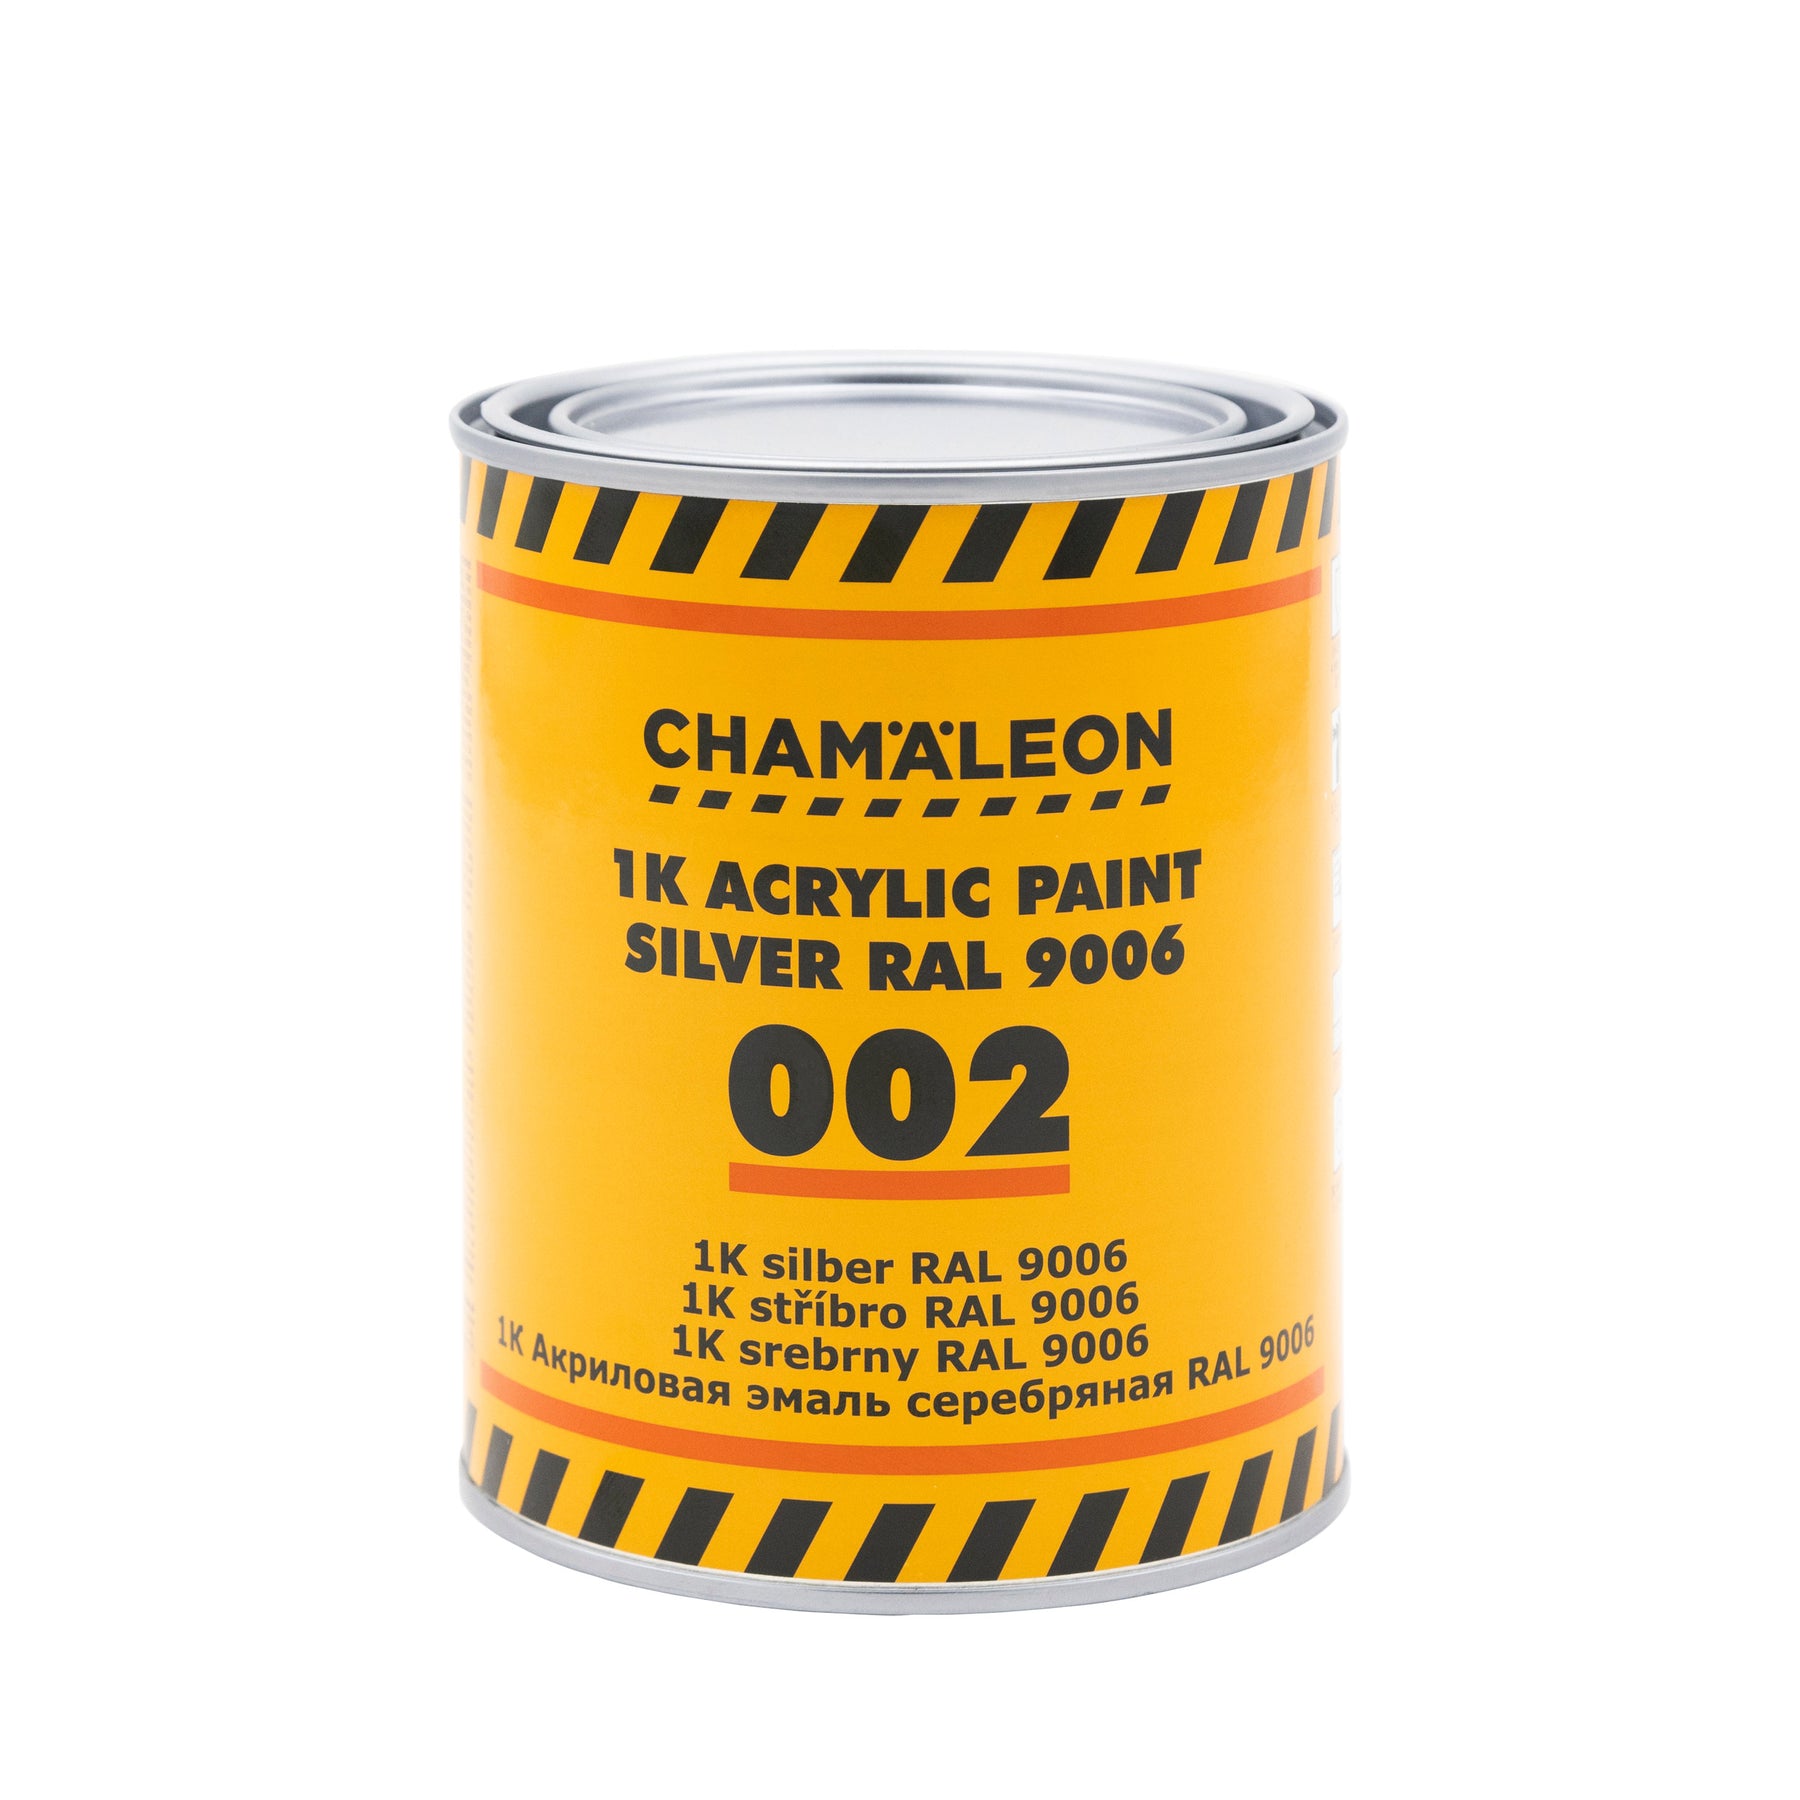 CHAMALEON 1K Acrylic Paint 001/002